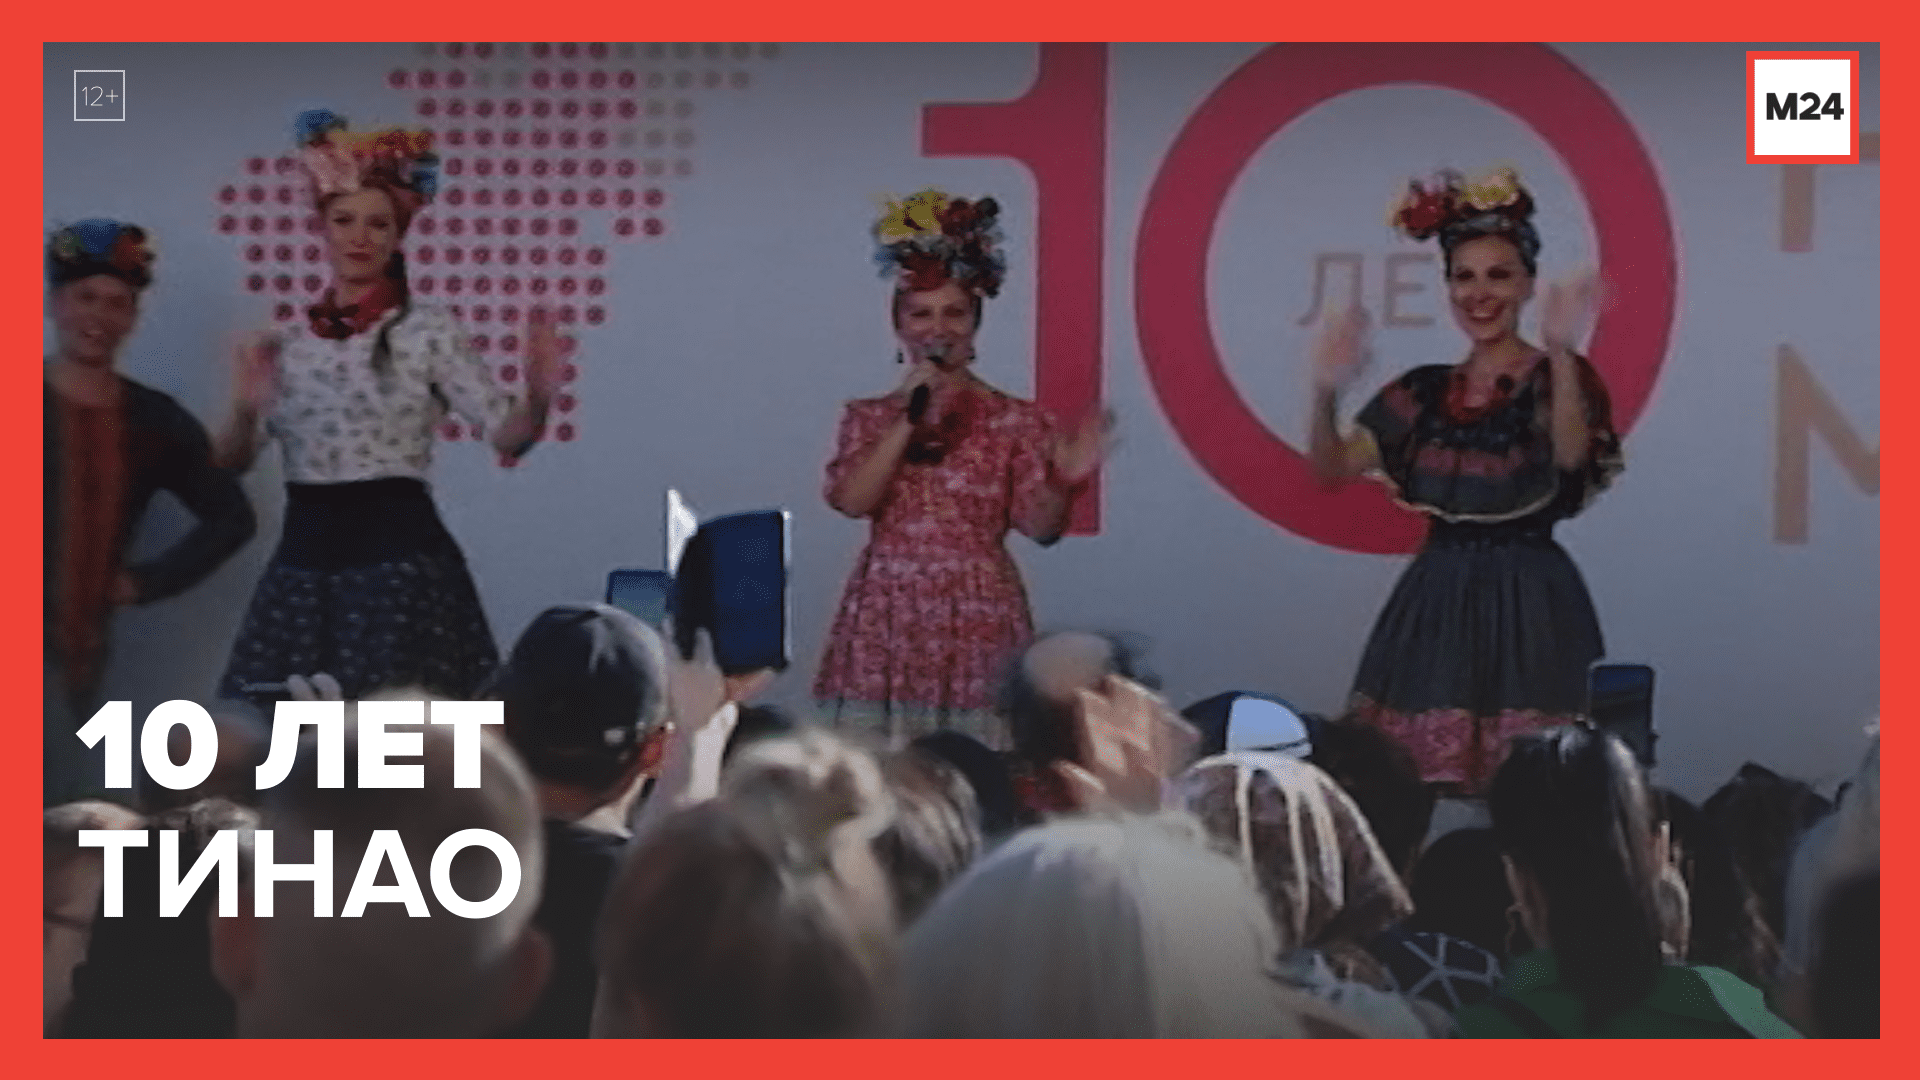 Фестиваль в честь десятилетия ТиНАО — Москва 24